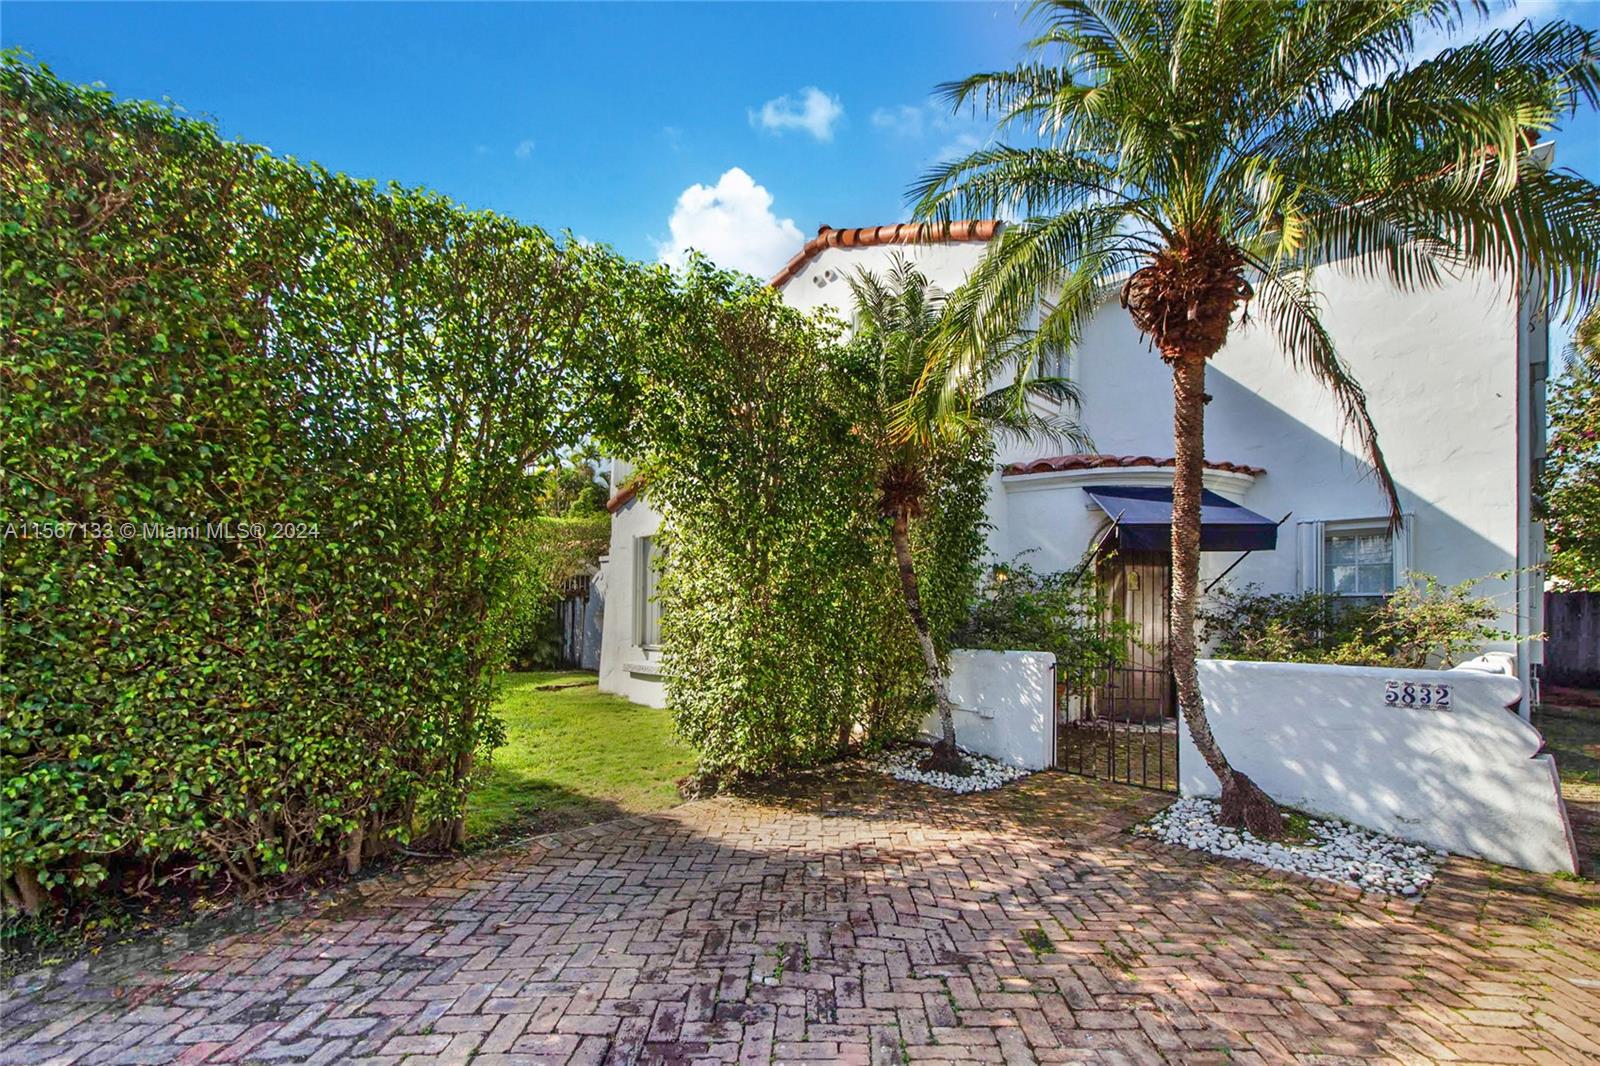 Property for Sale at 5832 Alton Rd, Miami Beach, Miami-Dade County, Florida - Bedrooms: 4 
Bathrooms: 5  - $1,895,000